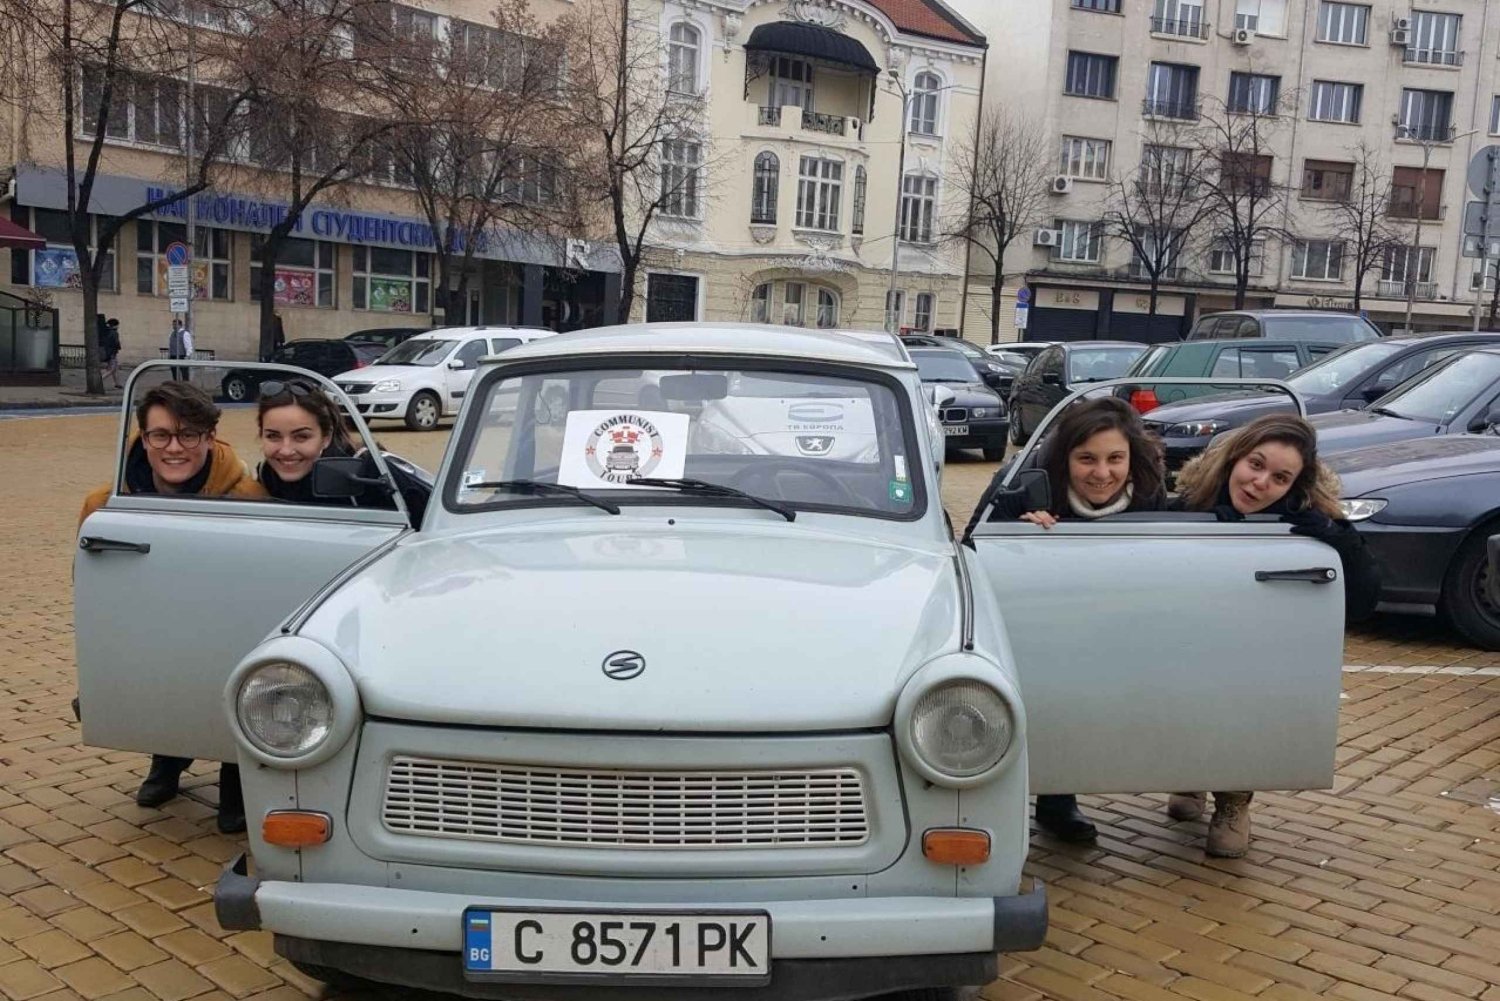 Sofia: Kommunistiske relikvier: Køretur i en Trabant bil